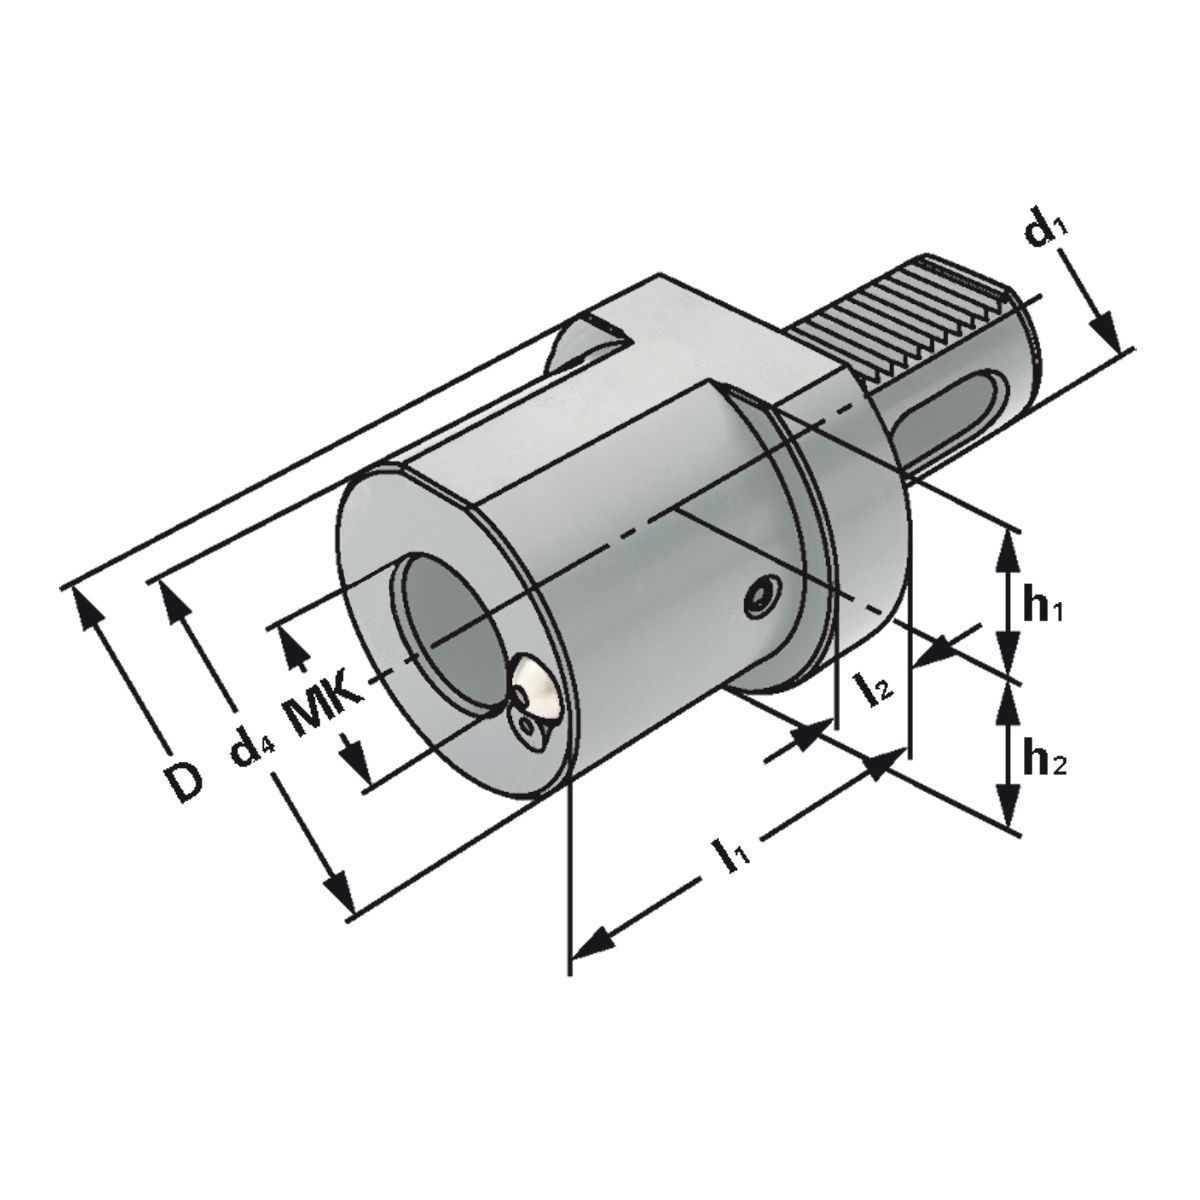 MK-Bohrerhalter F1-40xMK3 DIN 69880 (ISO 10889)